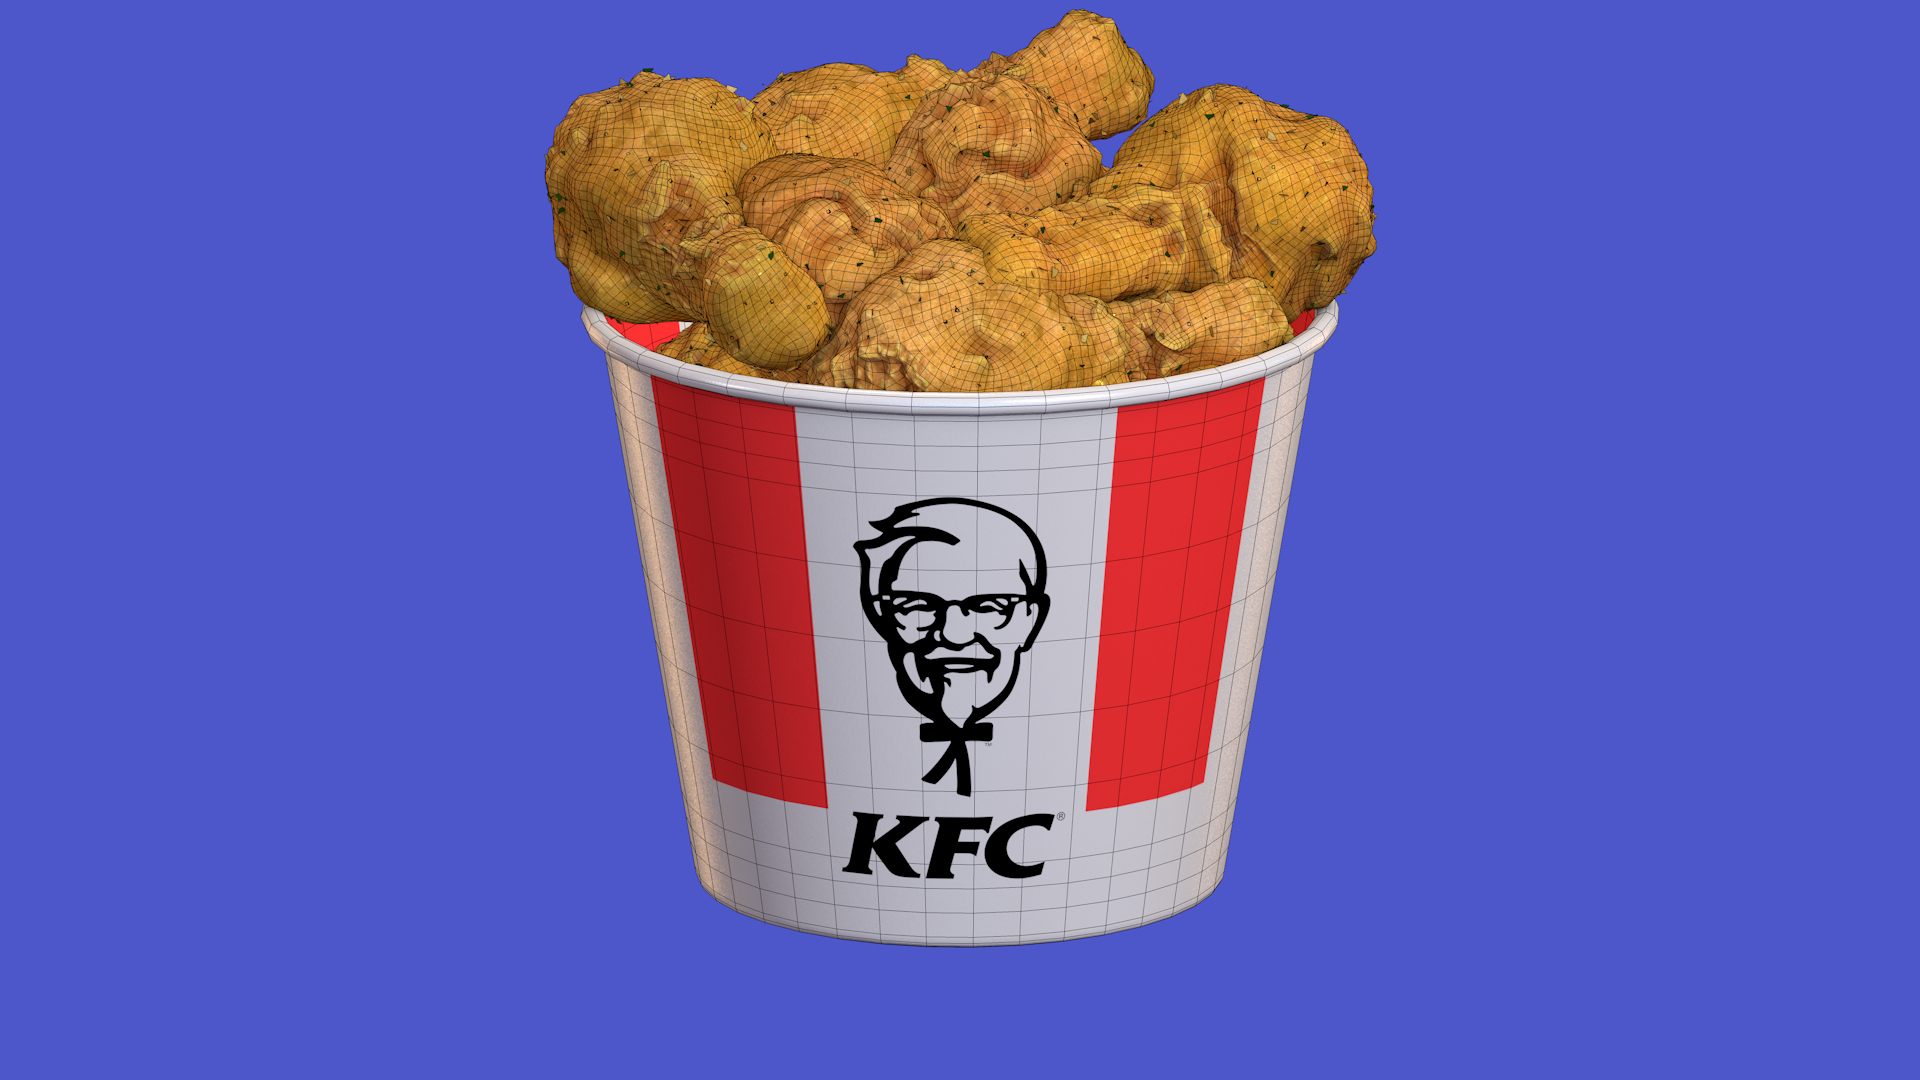 Besonderes Design KFC Fried Chicken Model - 3D TurboSquid 1747161 Bucket 8K